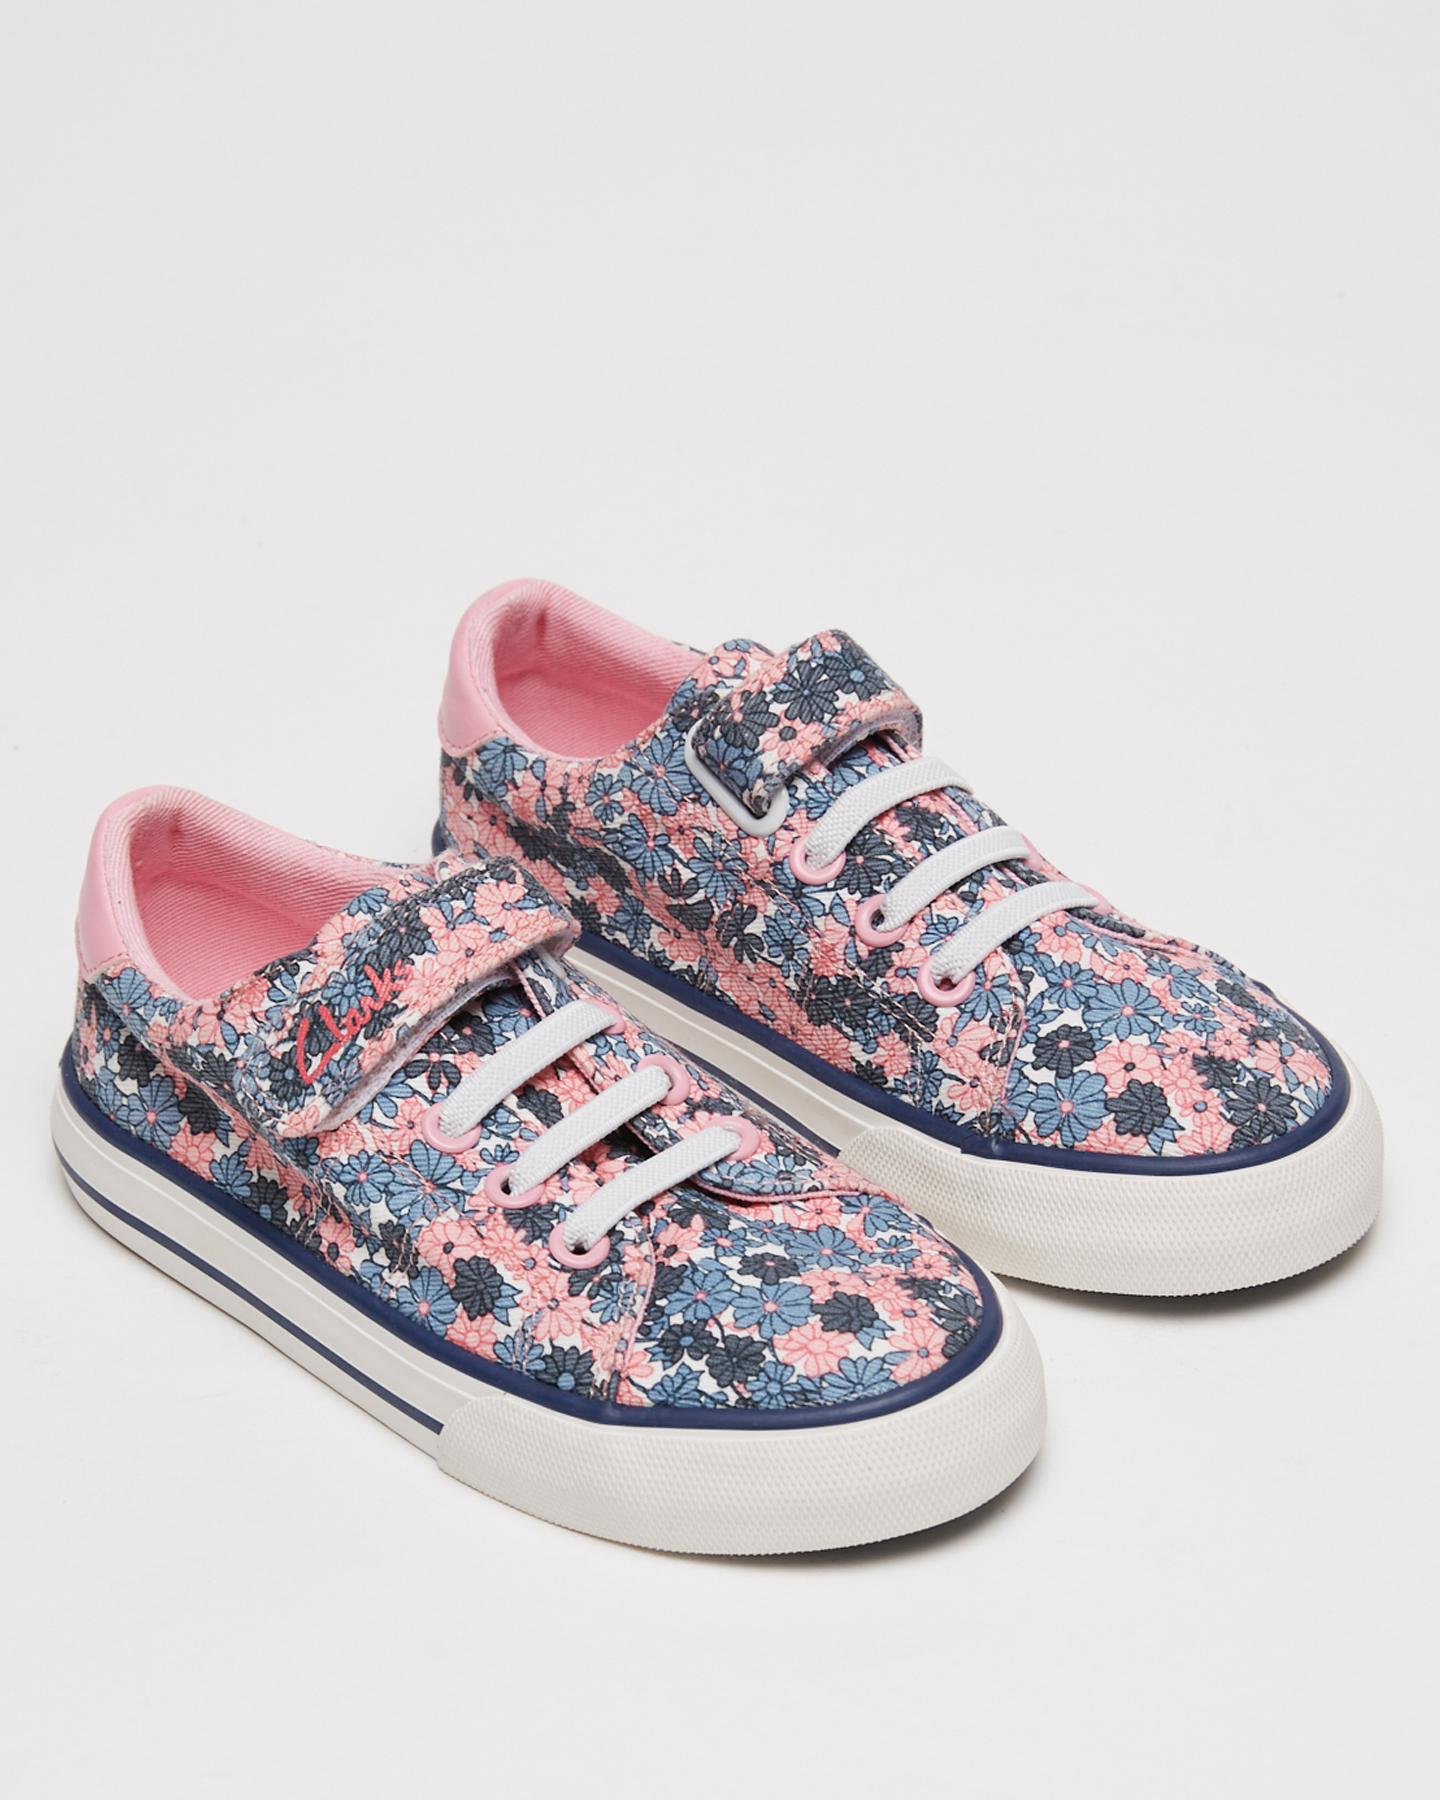 Clarks Leah Shoe - Navy Floral |